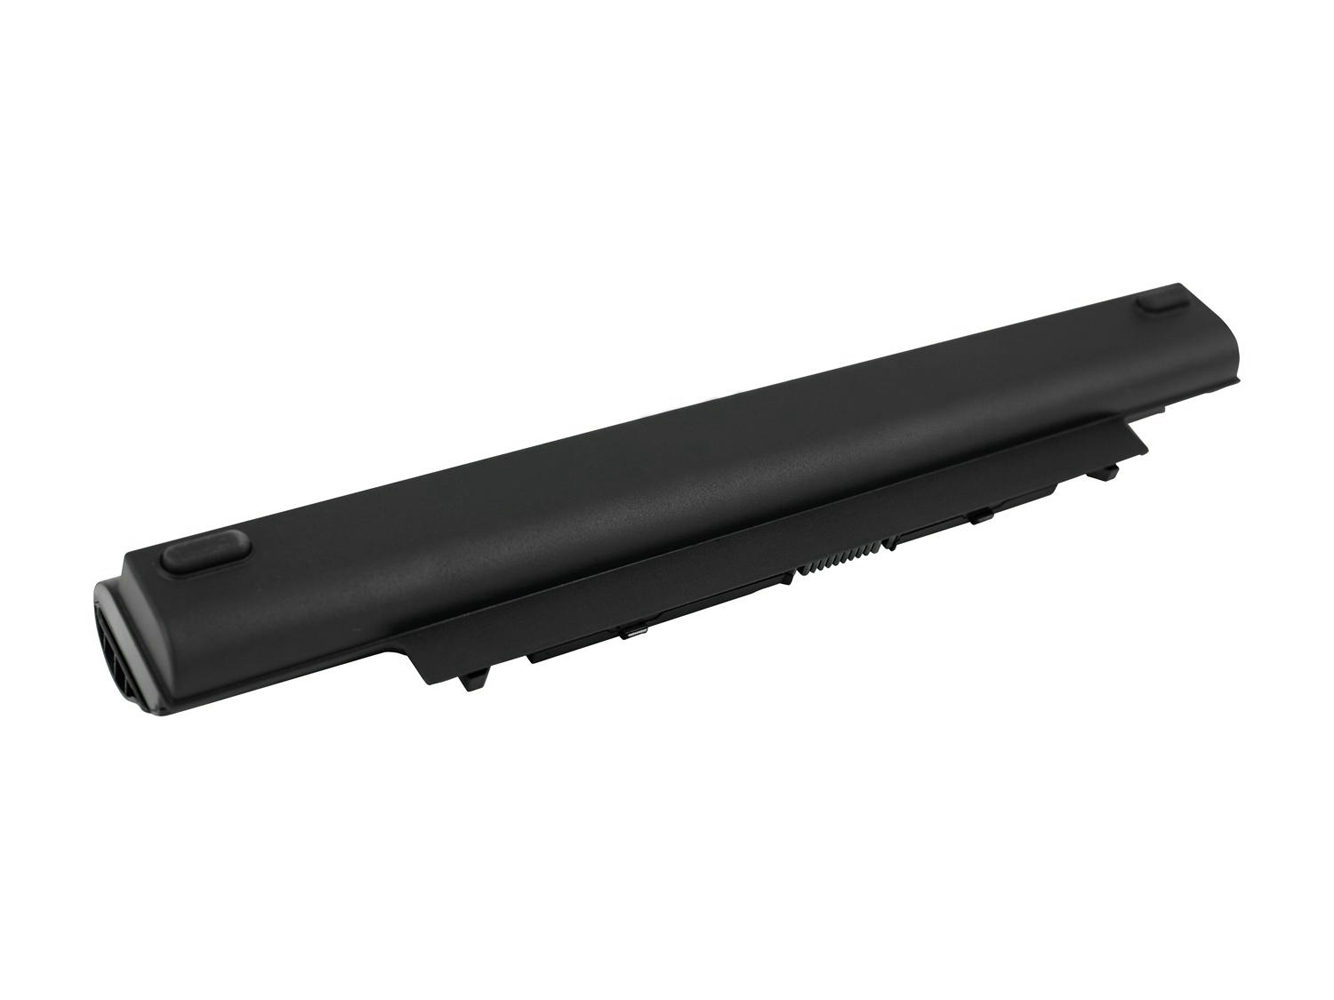 Kompatibler Ersatz für Dell Vostro V131 2 Serien Laptop Akku